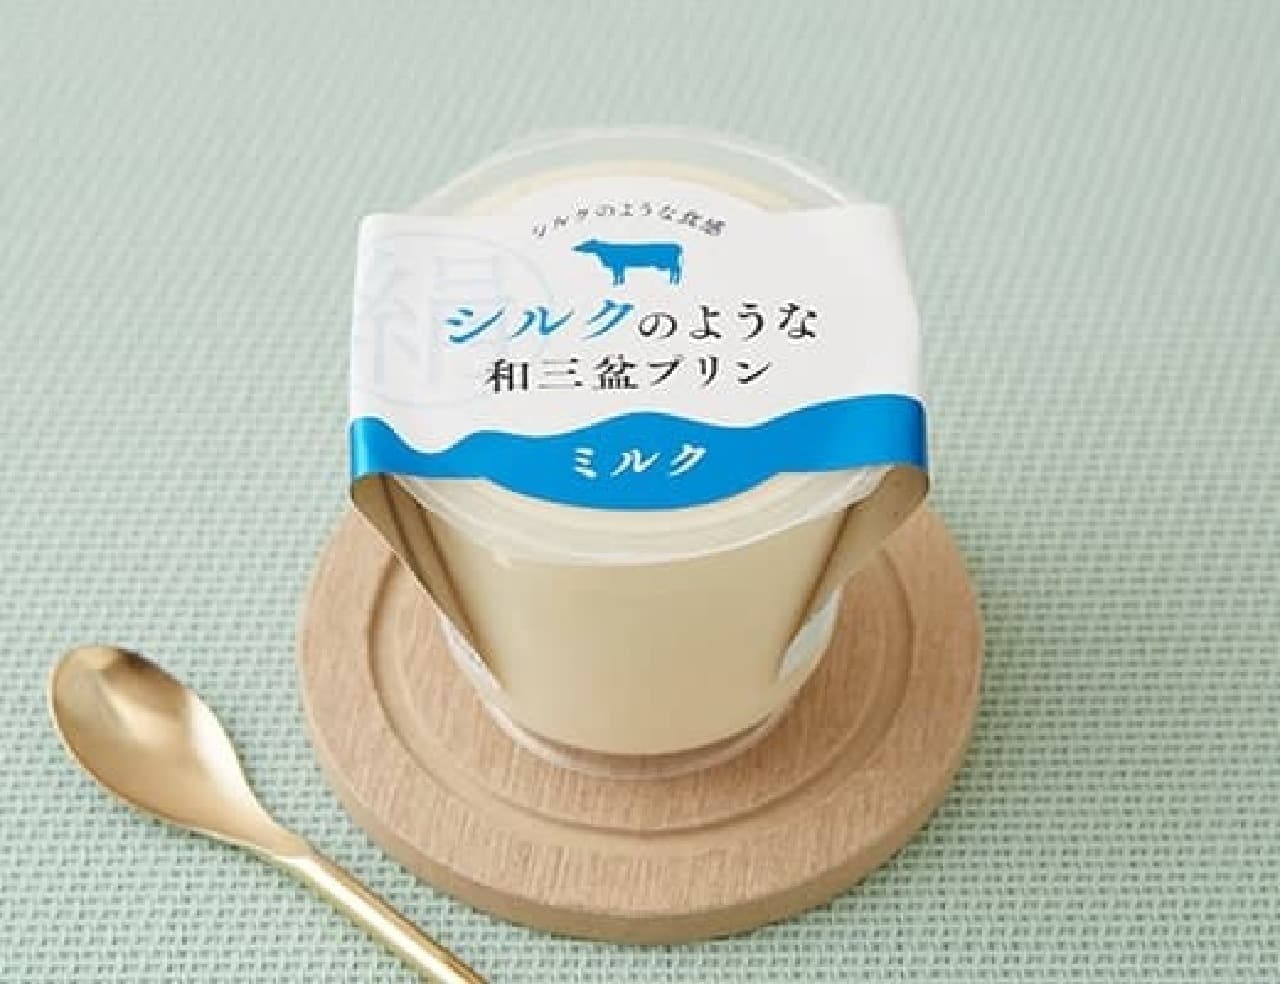 LAWSON "Tokushima Sangyo Silky Wasanbon Pudding Milk 120g